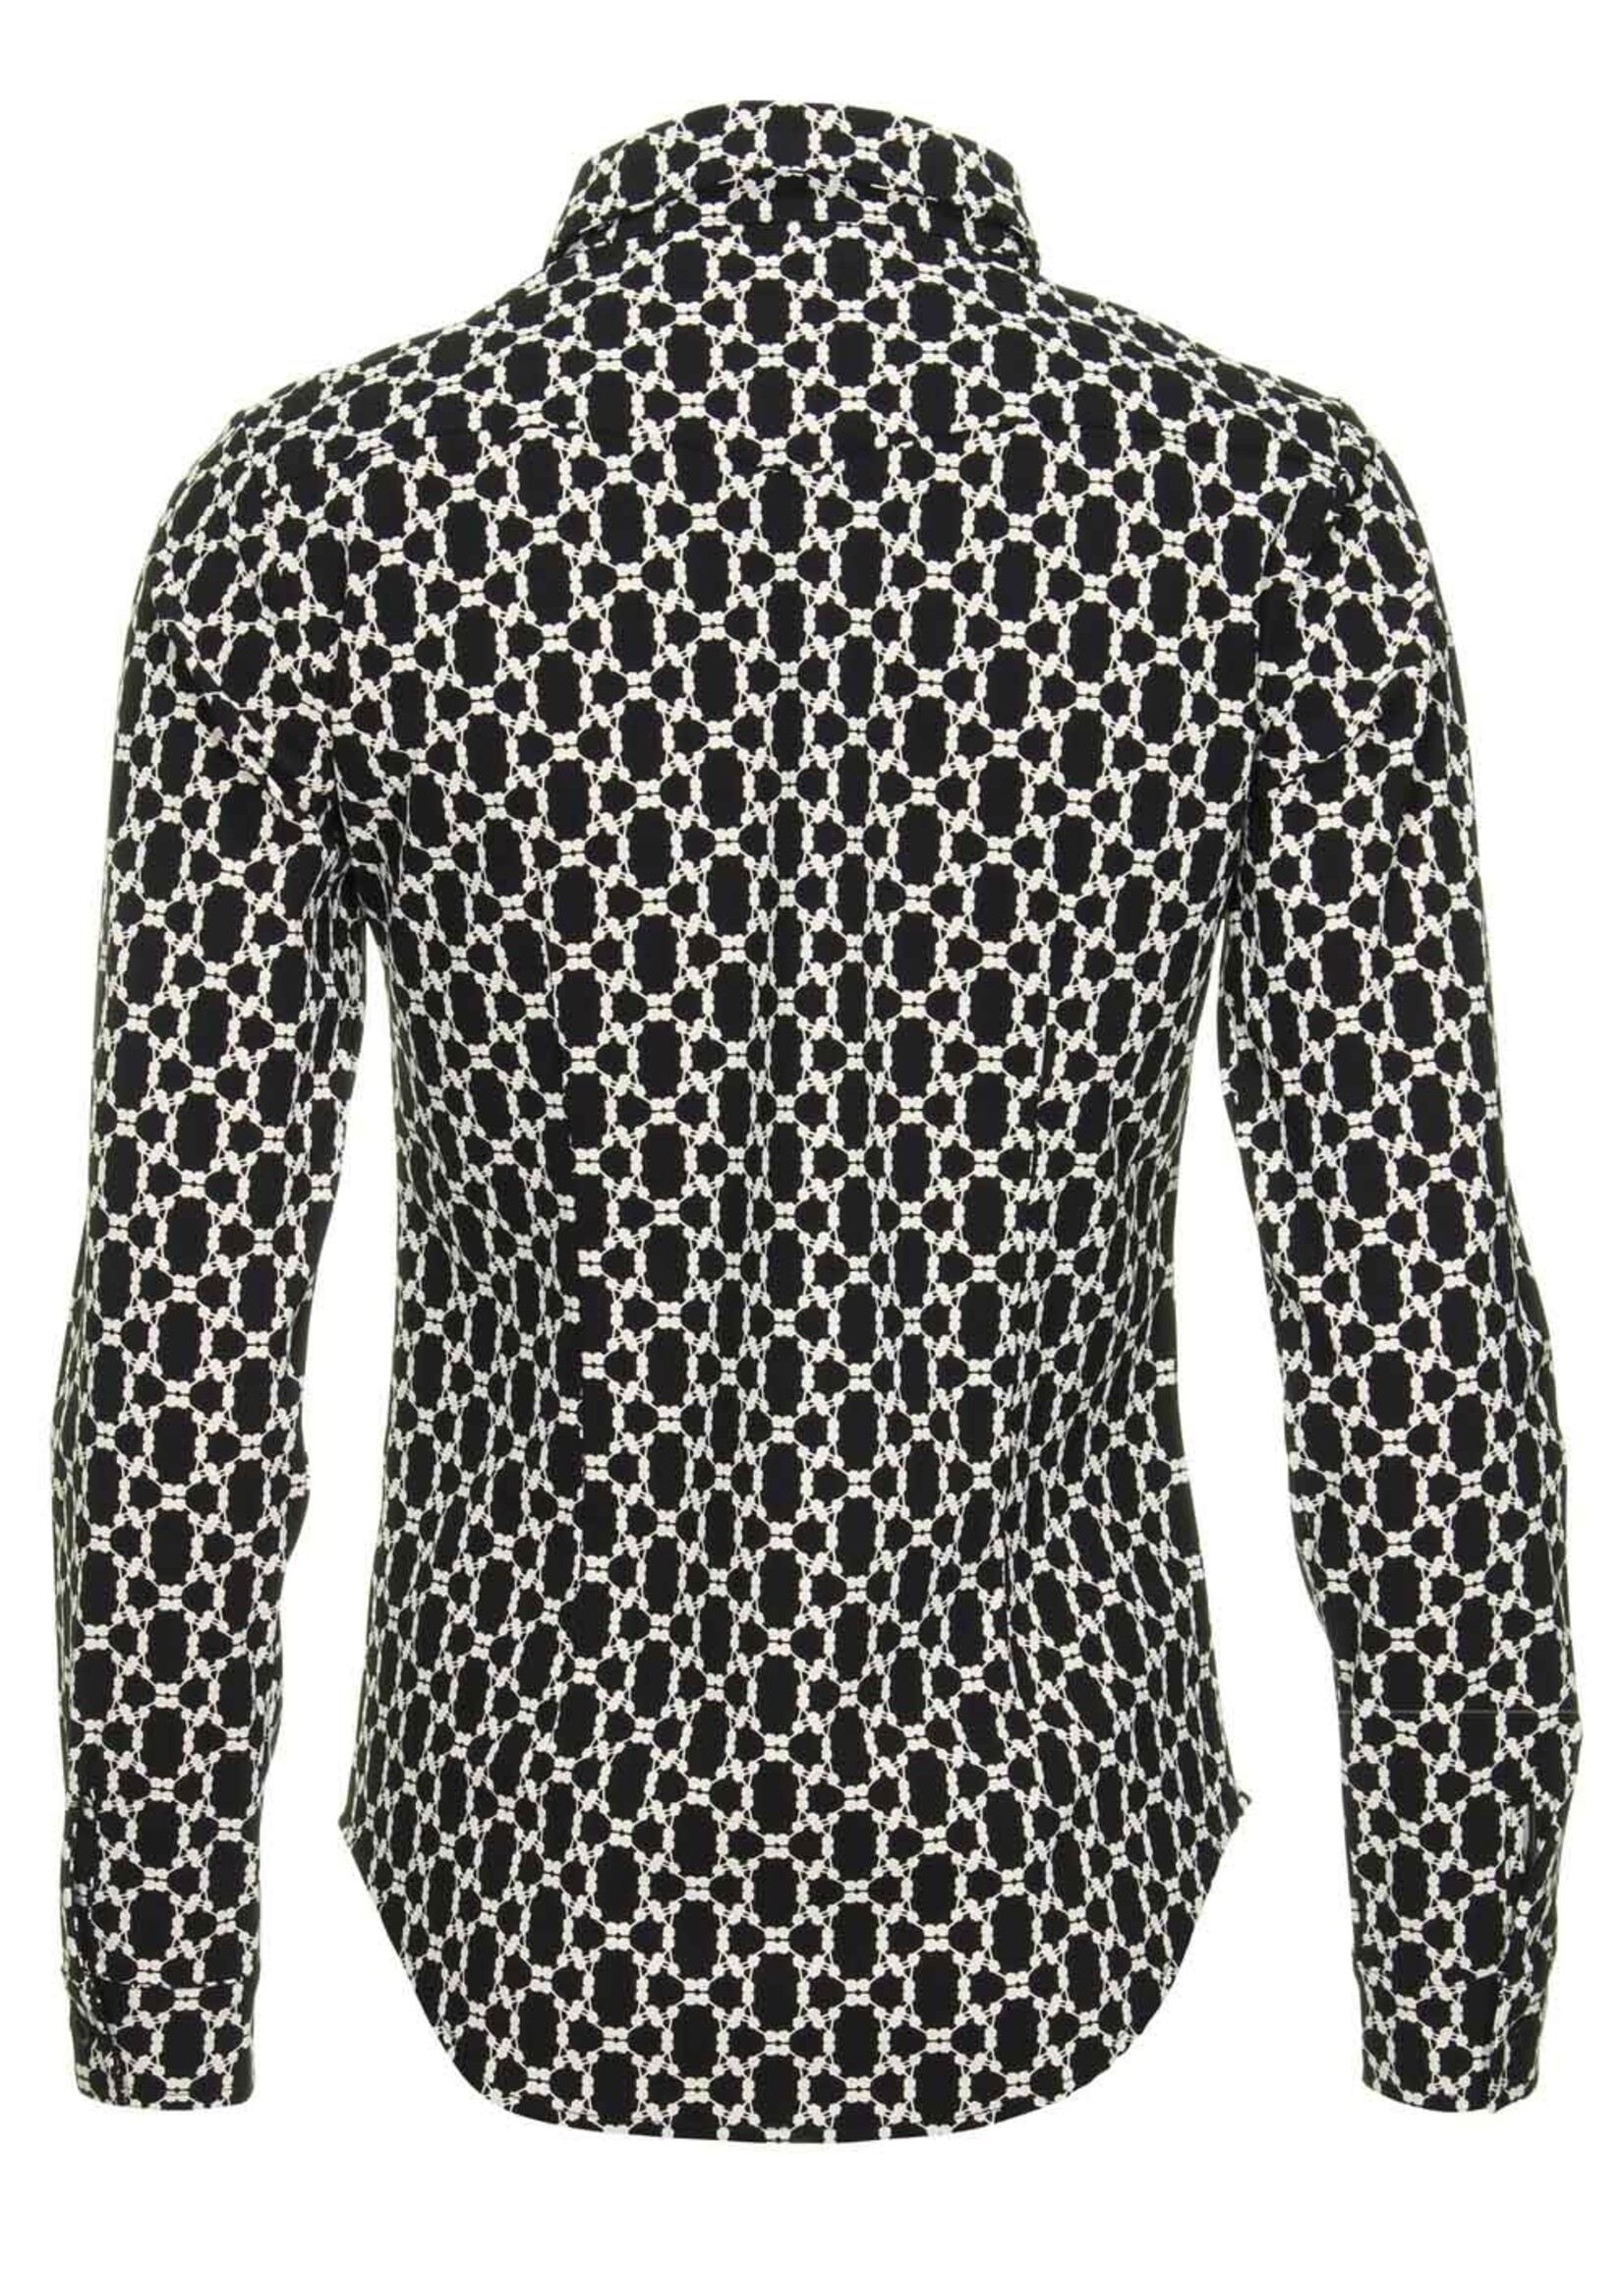 Mi Piace Travel blouse black kit dotted 60840